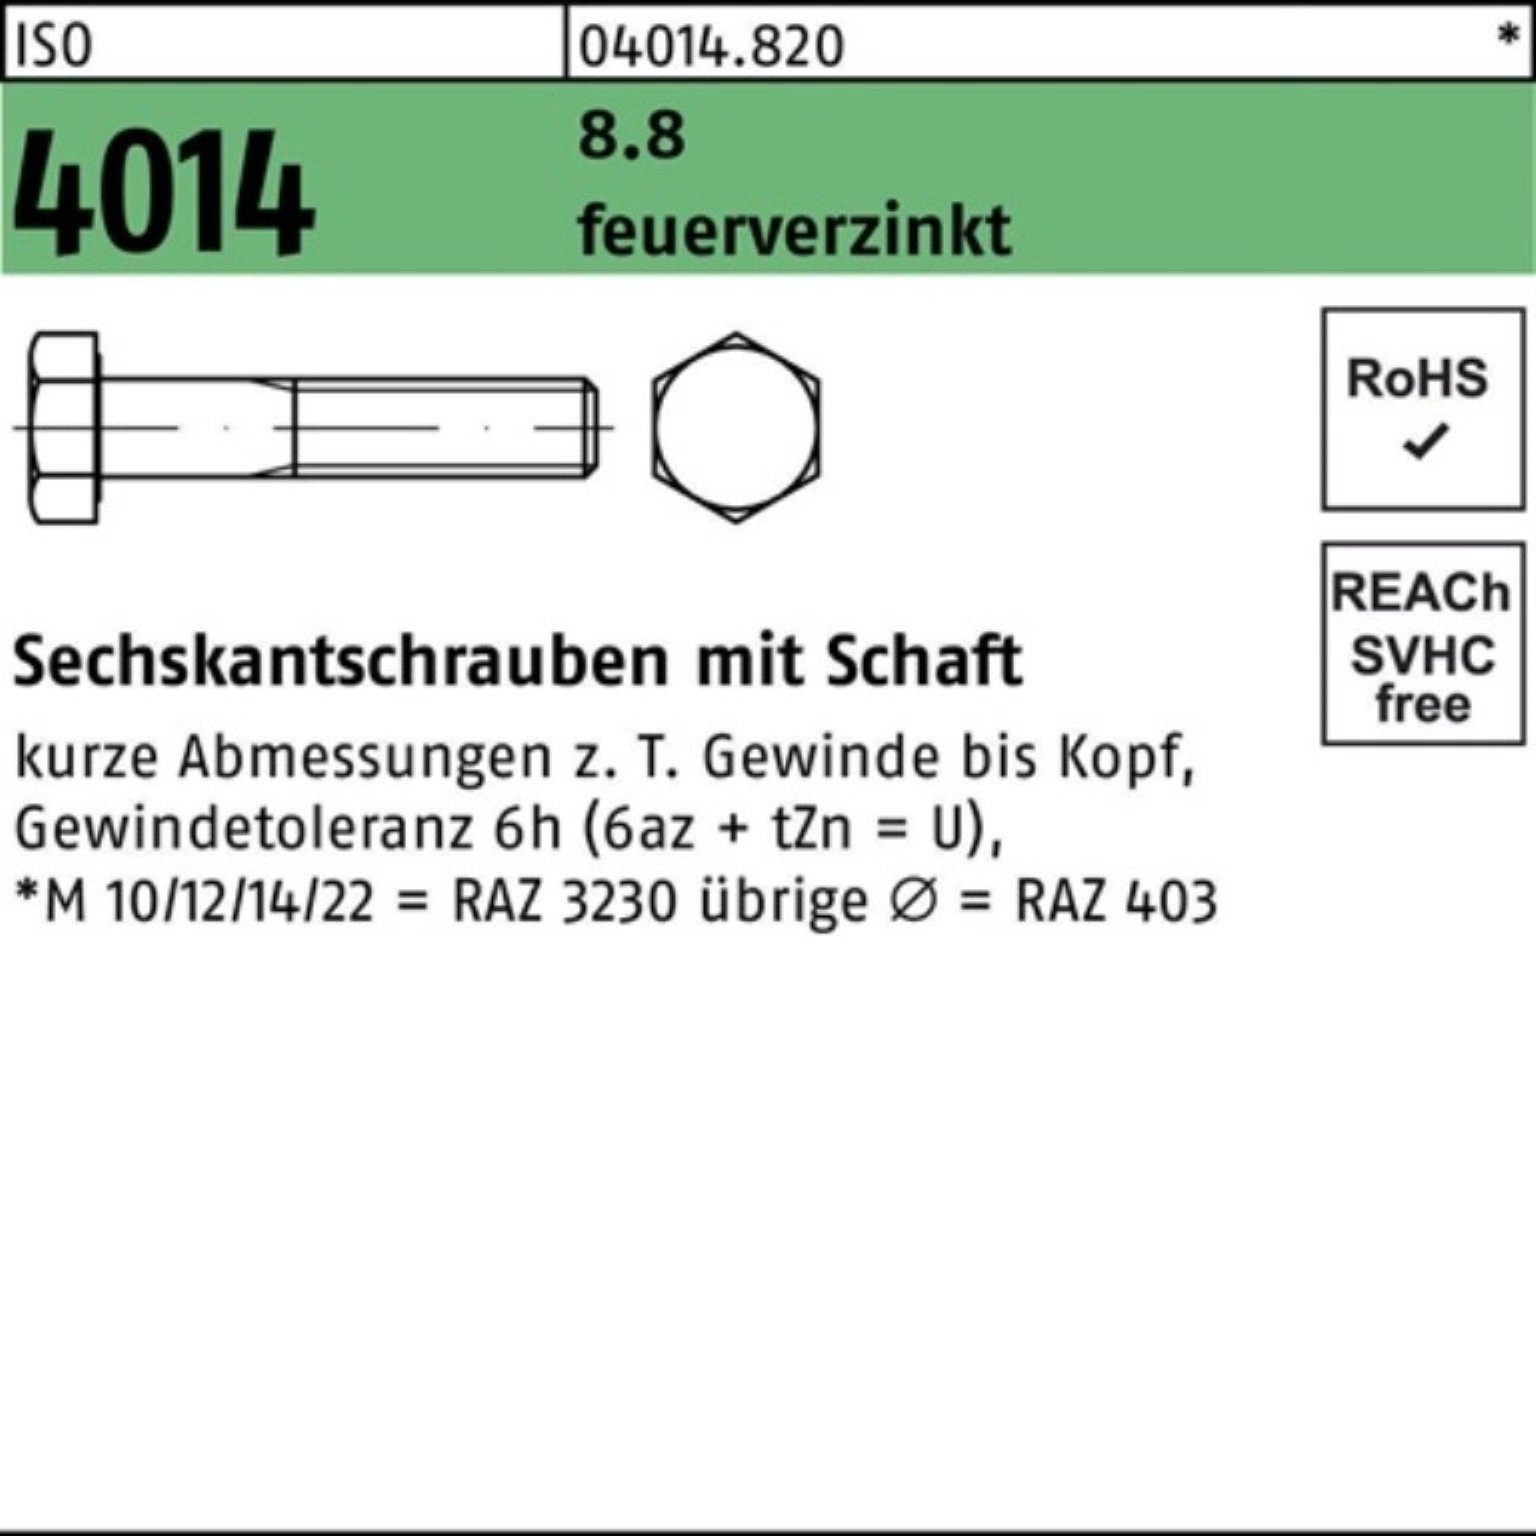 Bufab Sechskantschraube 100er Pack Sechskantschraube ISO 4014 Schaft M10x 90 8.8 feuerverz. 10